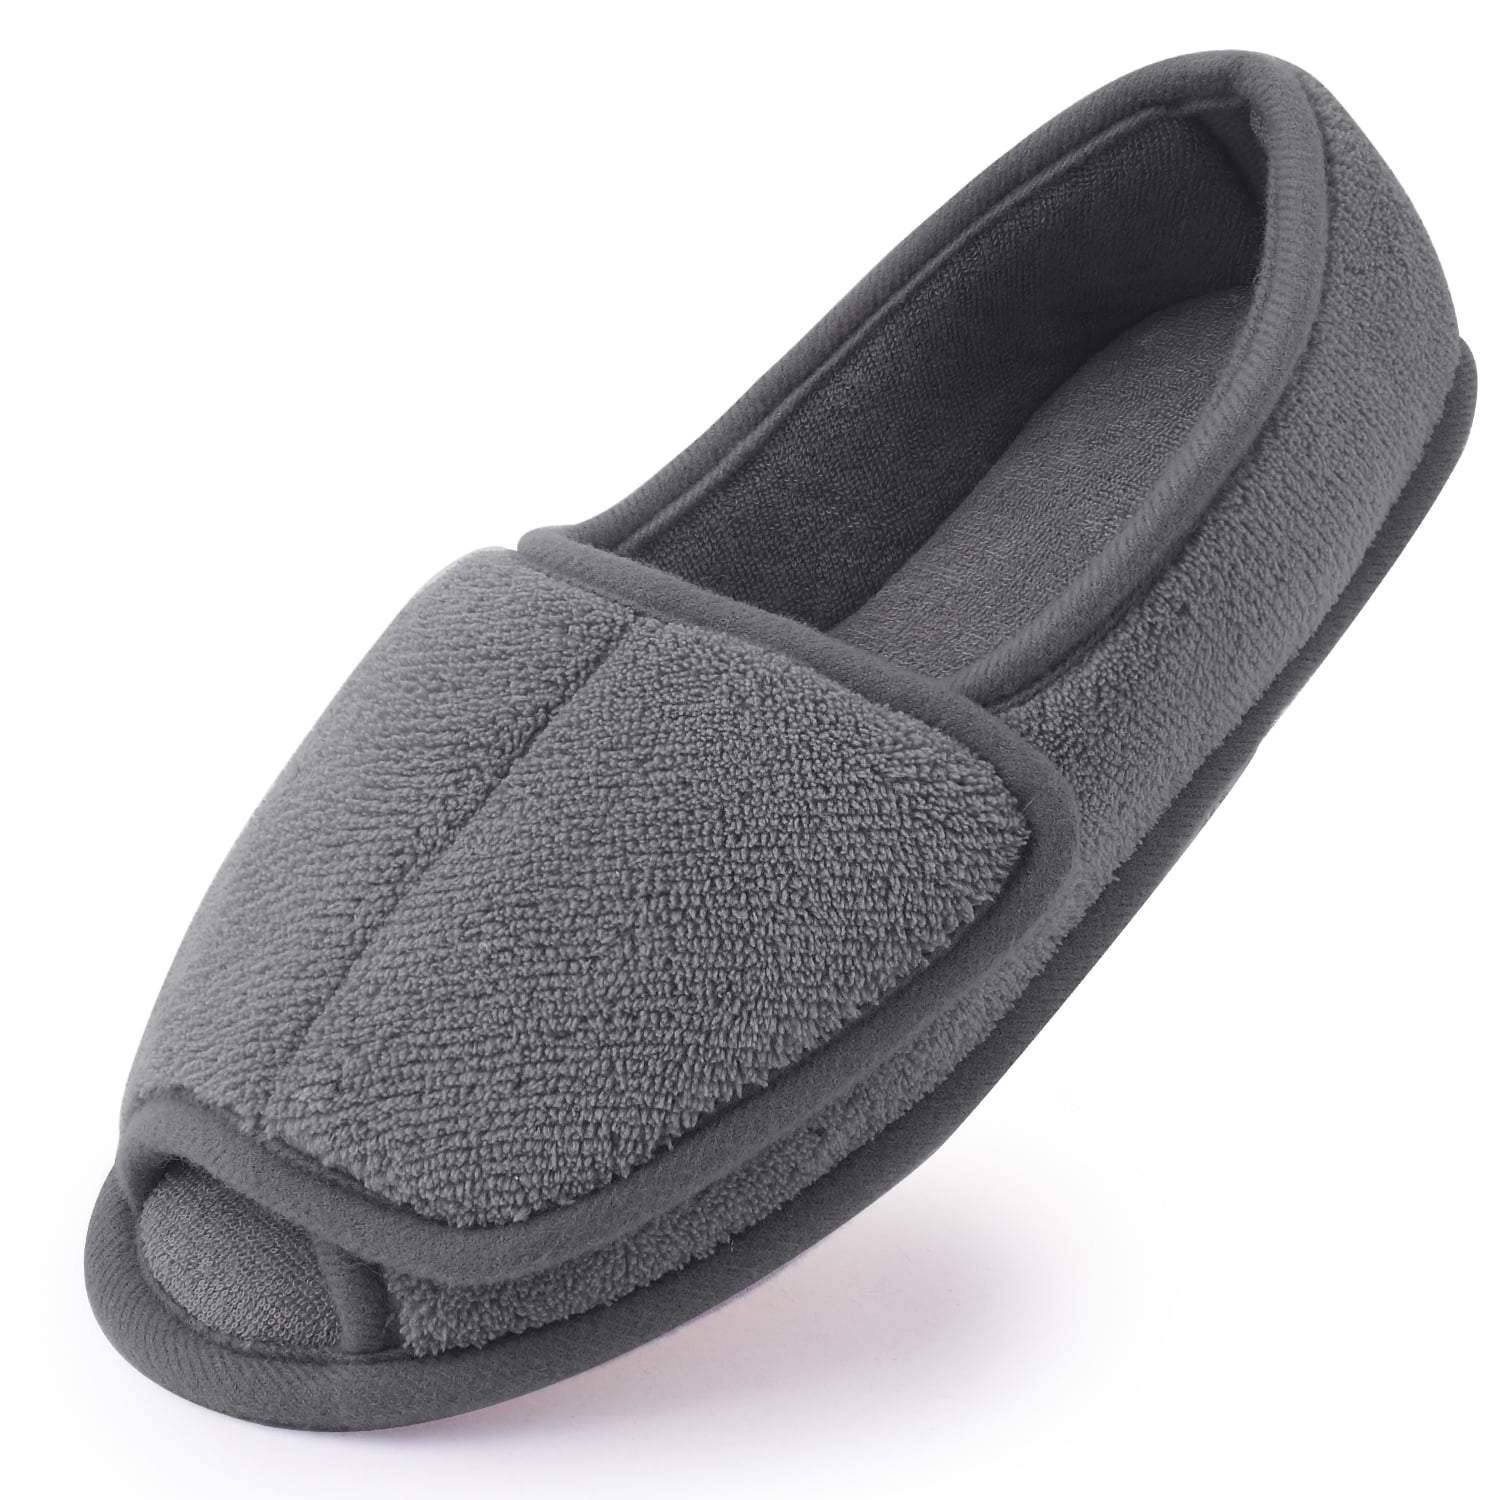 Diabetic Slippers for Women Memory Foam Arthritis Edema Adjustable Open Toe Swollen Feet House Shoes Grey 11 f6b9081e 4a38 4974 a542 0f4407578d80.7f13cacab4fea085ff2ad67da54a800f